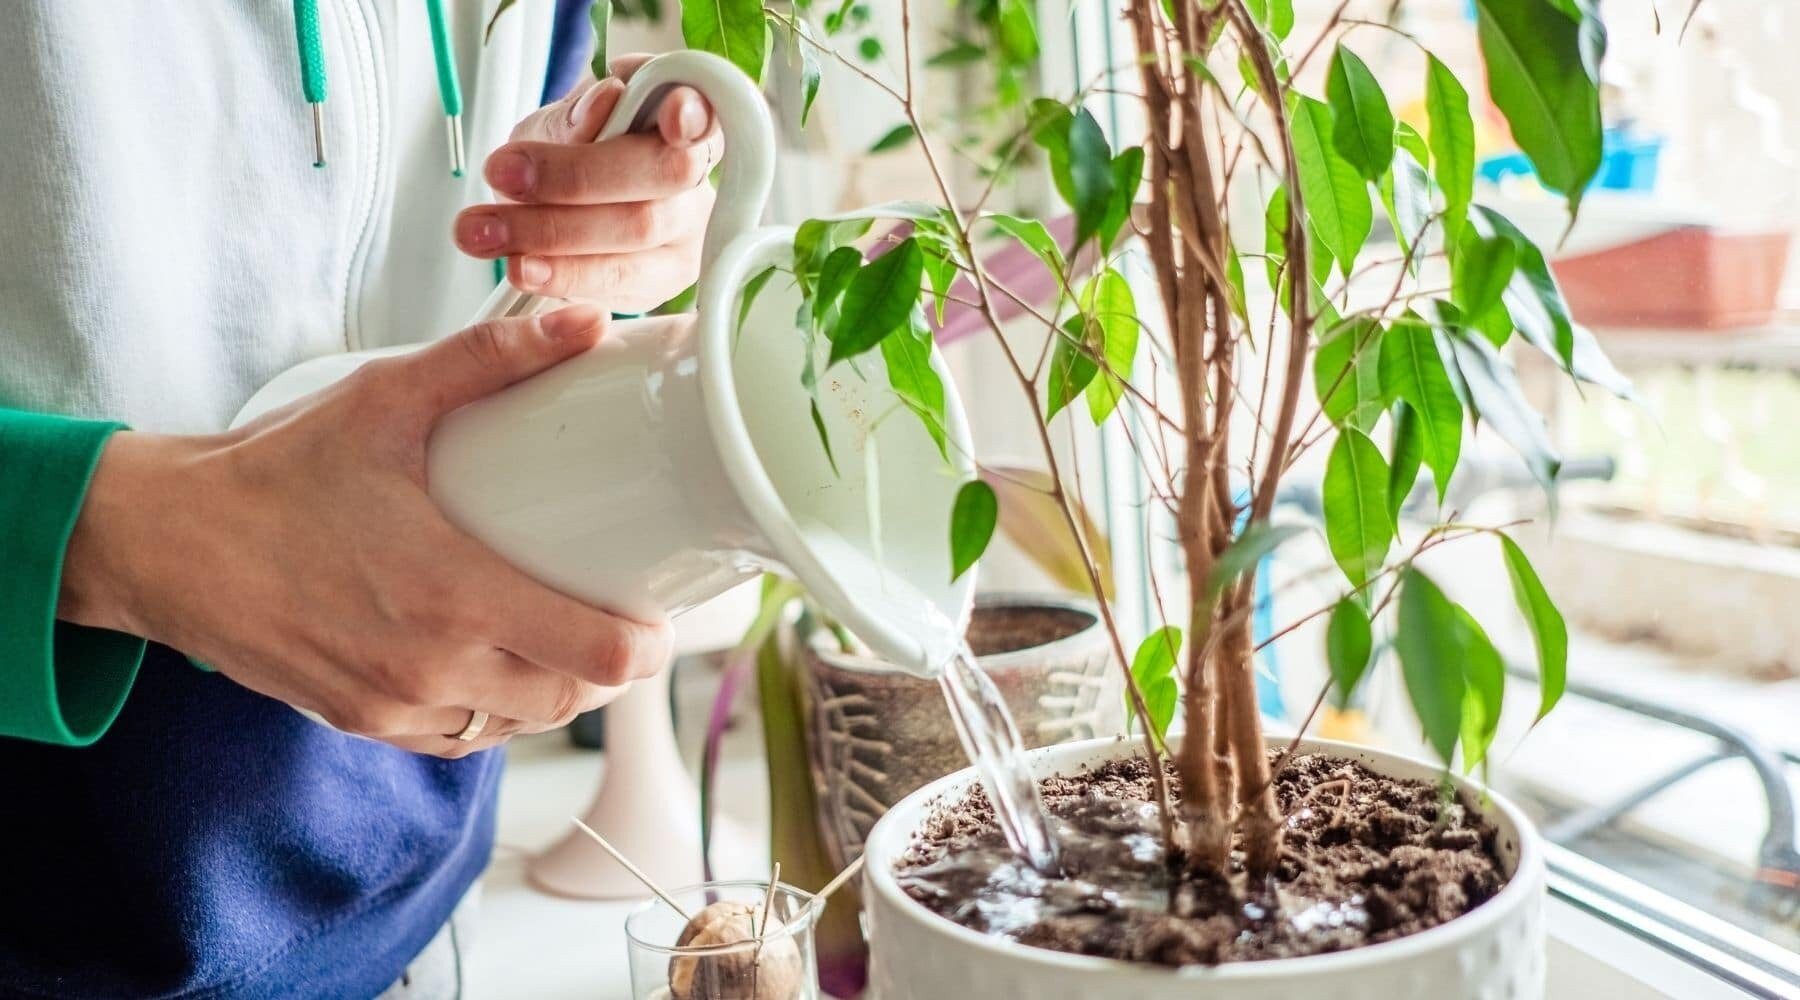 Tưới nước quá nhiều là một trong những sai lầm cần tránh khi trồng cây trong nhà (Ảnh: Bloombox Club)